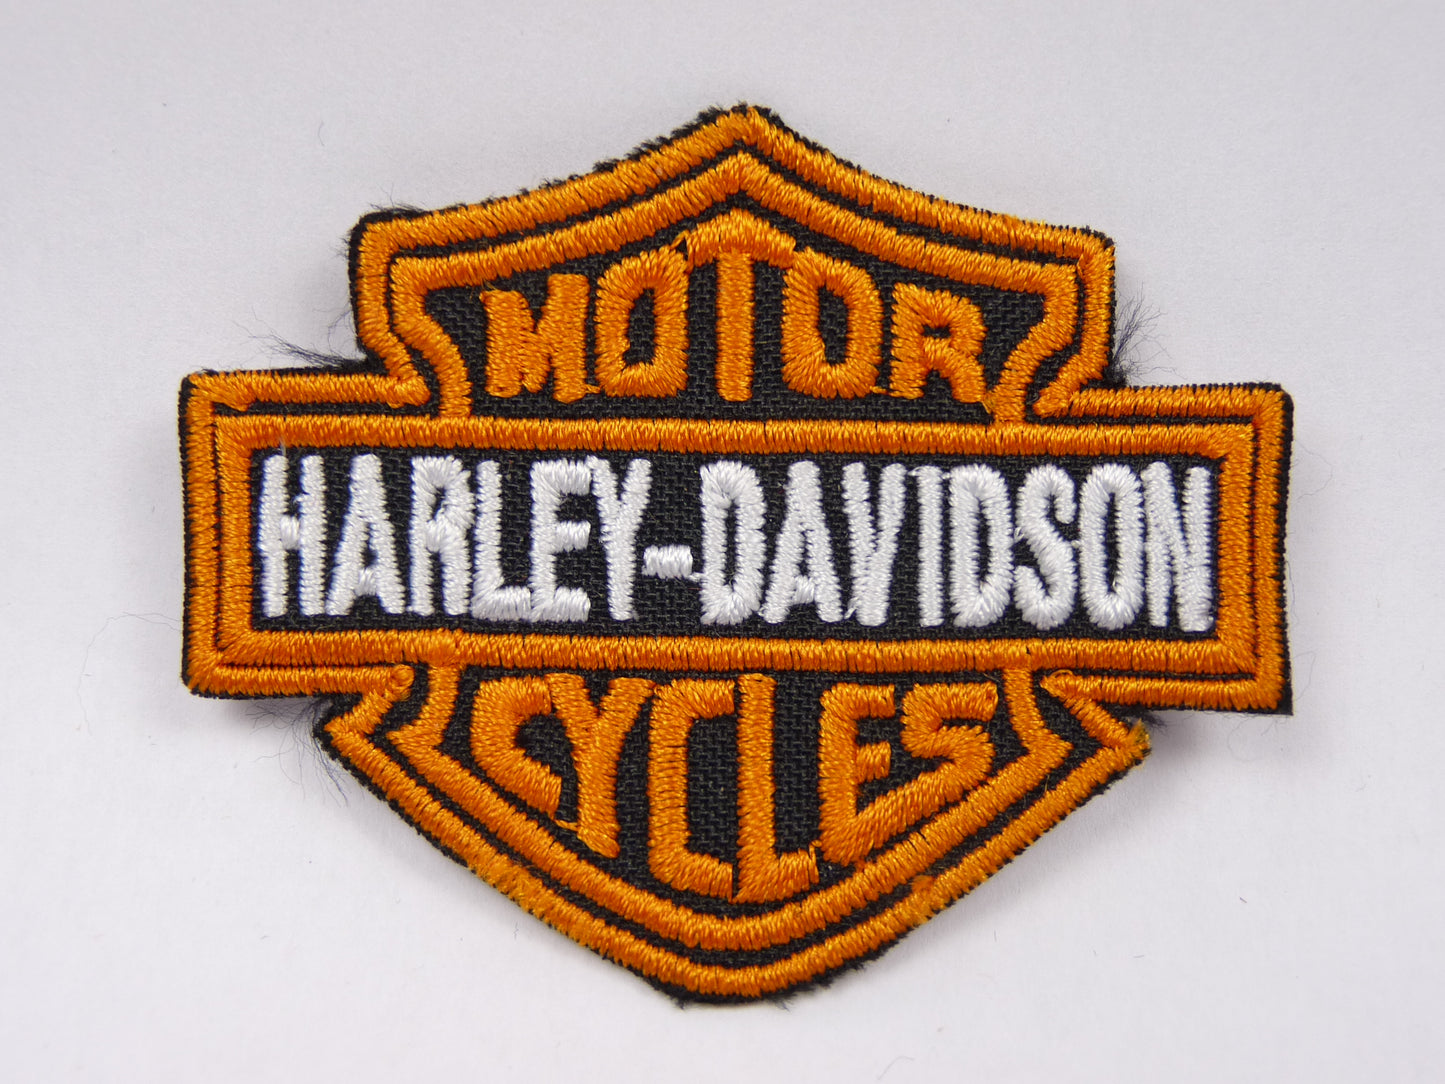 PTC66 Patch brodé thermocollé : logo Harley Davidson largeur environ 6.4 cm hauteur environ 5.2 cm